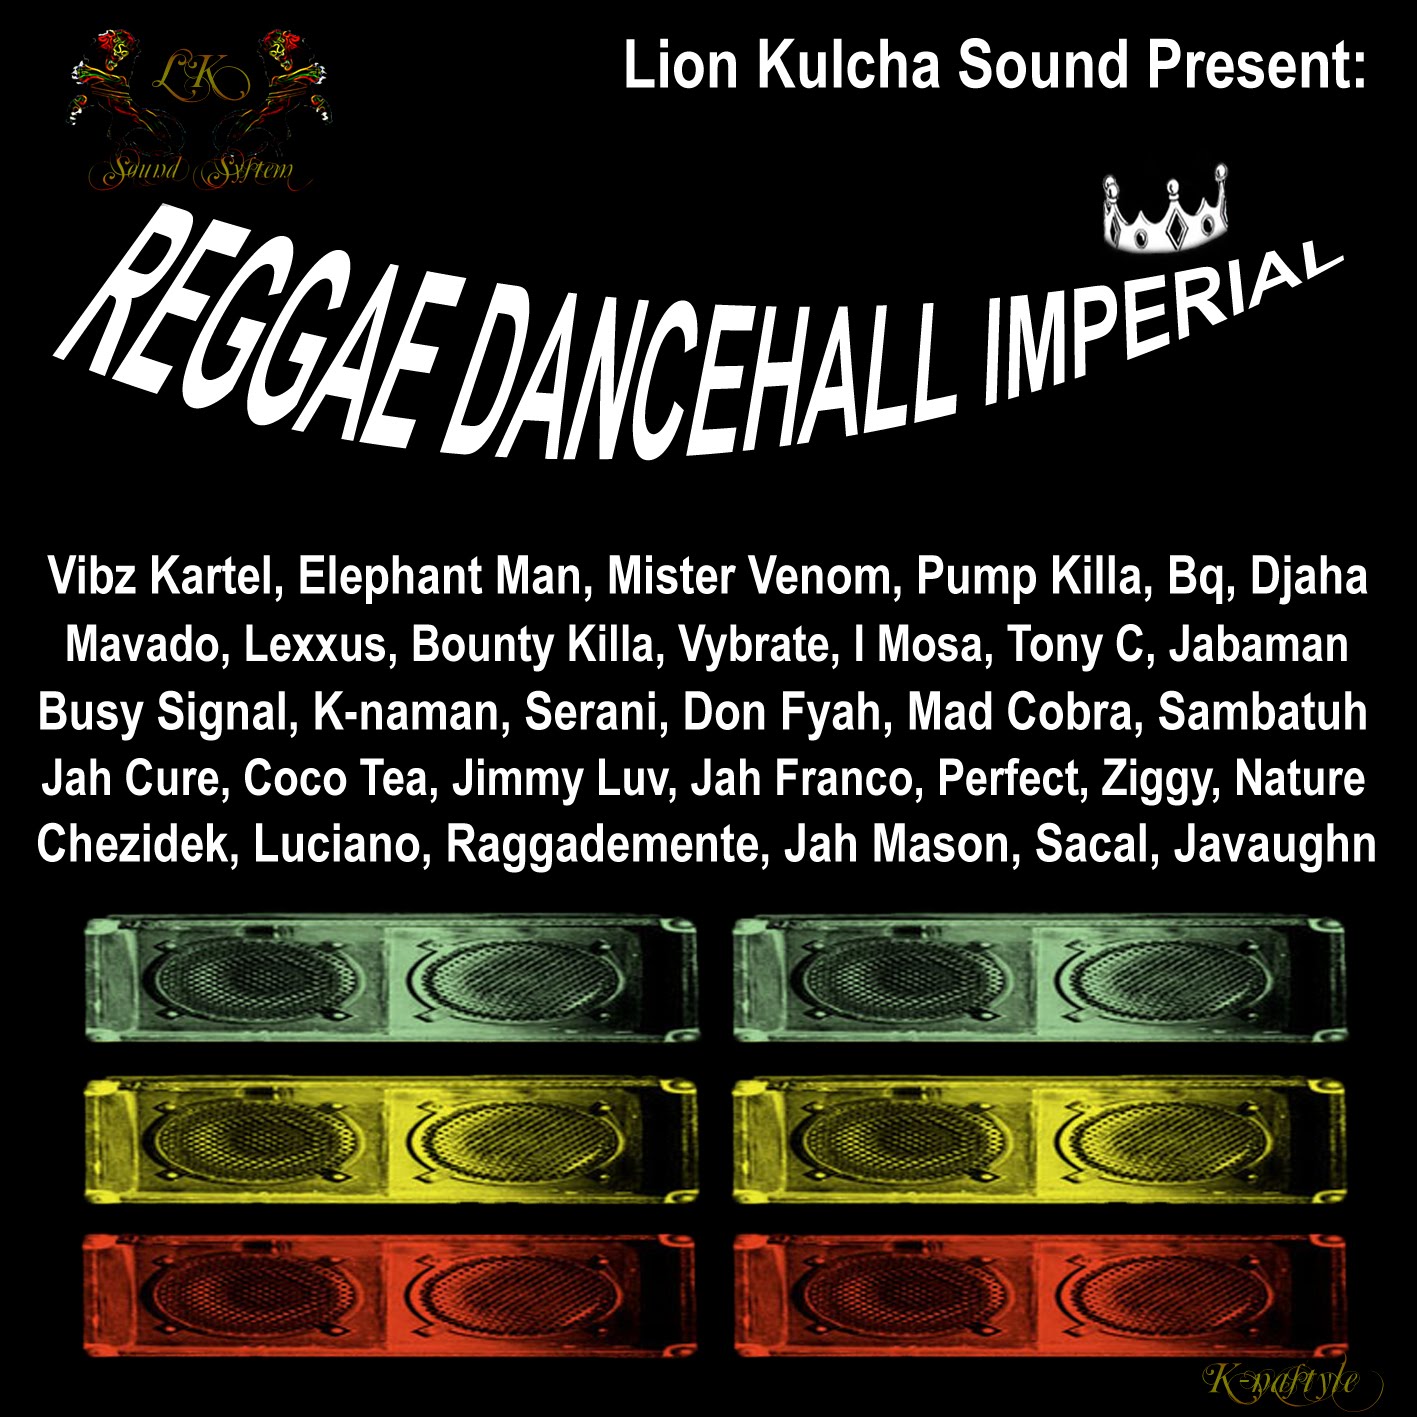 Reggae Dancehall Imperial